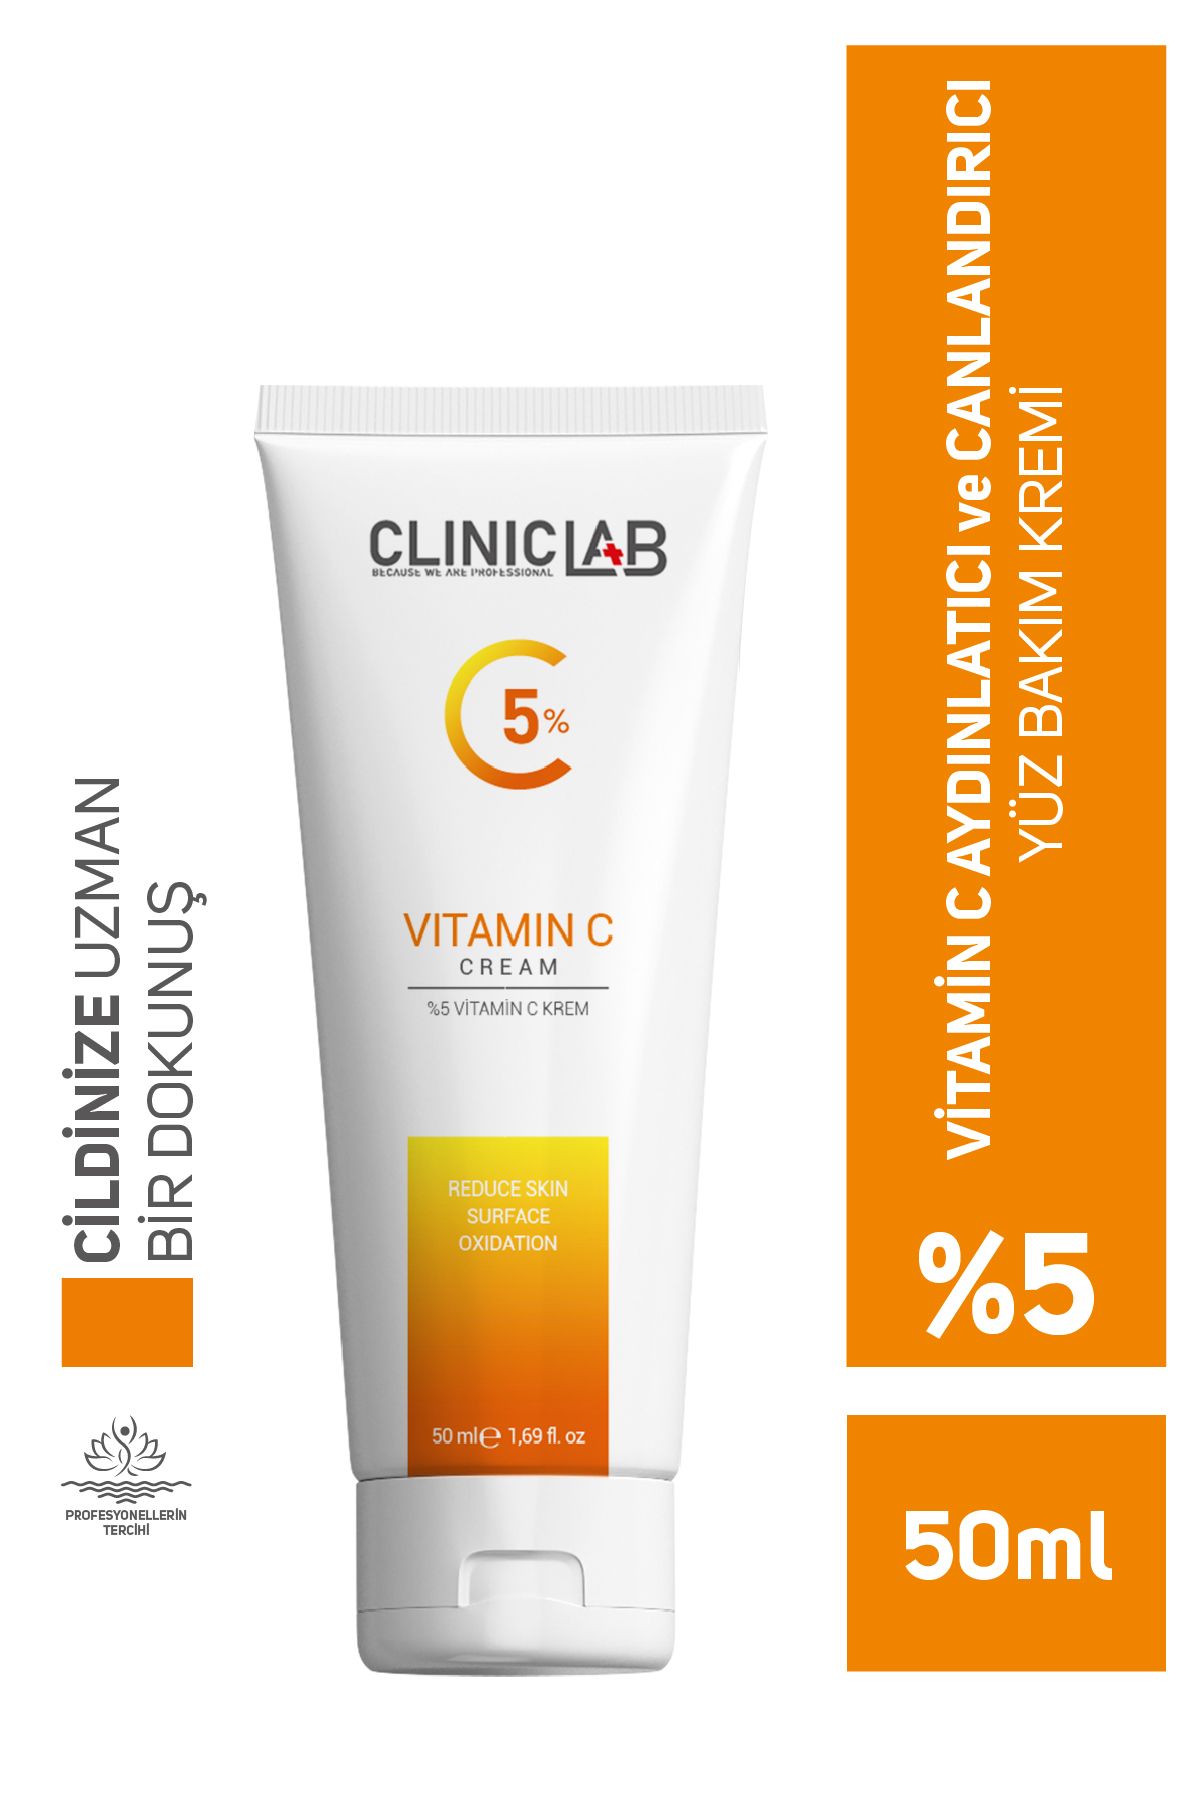 Cliniclab Vitamin C %5 Krem 50 Ml